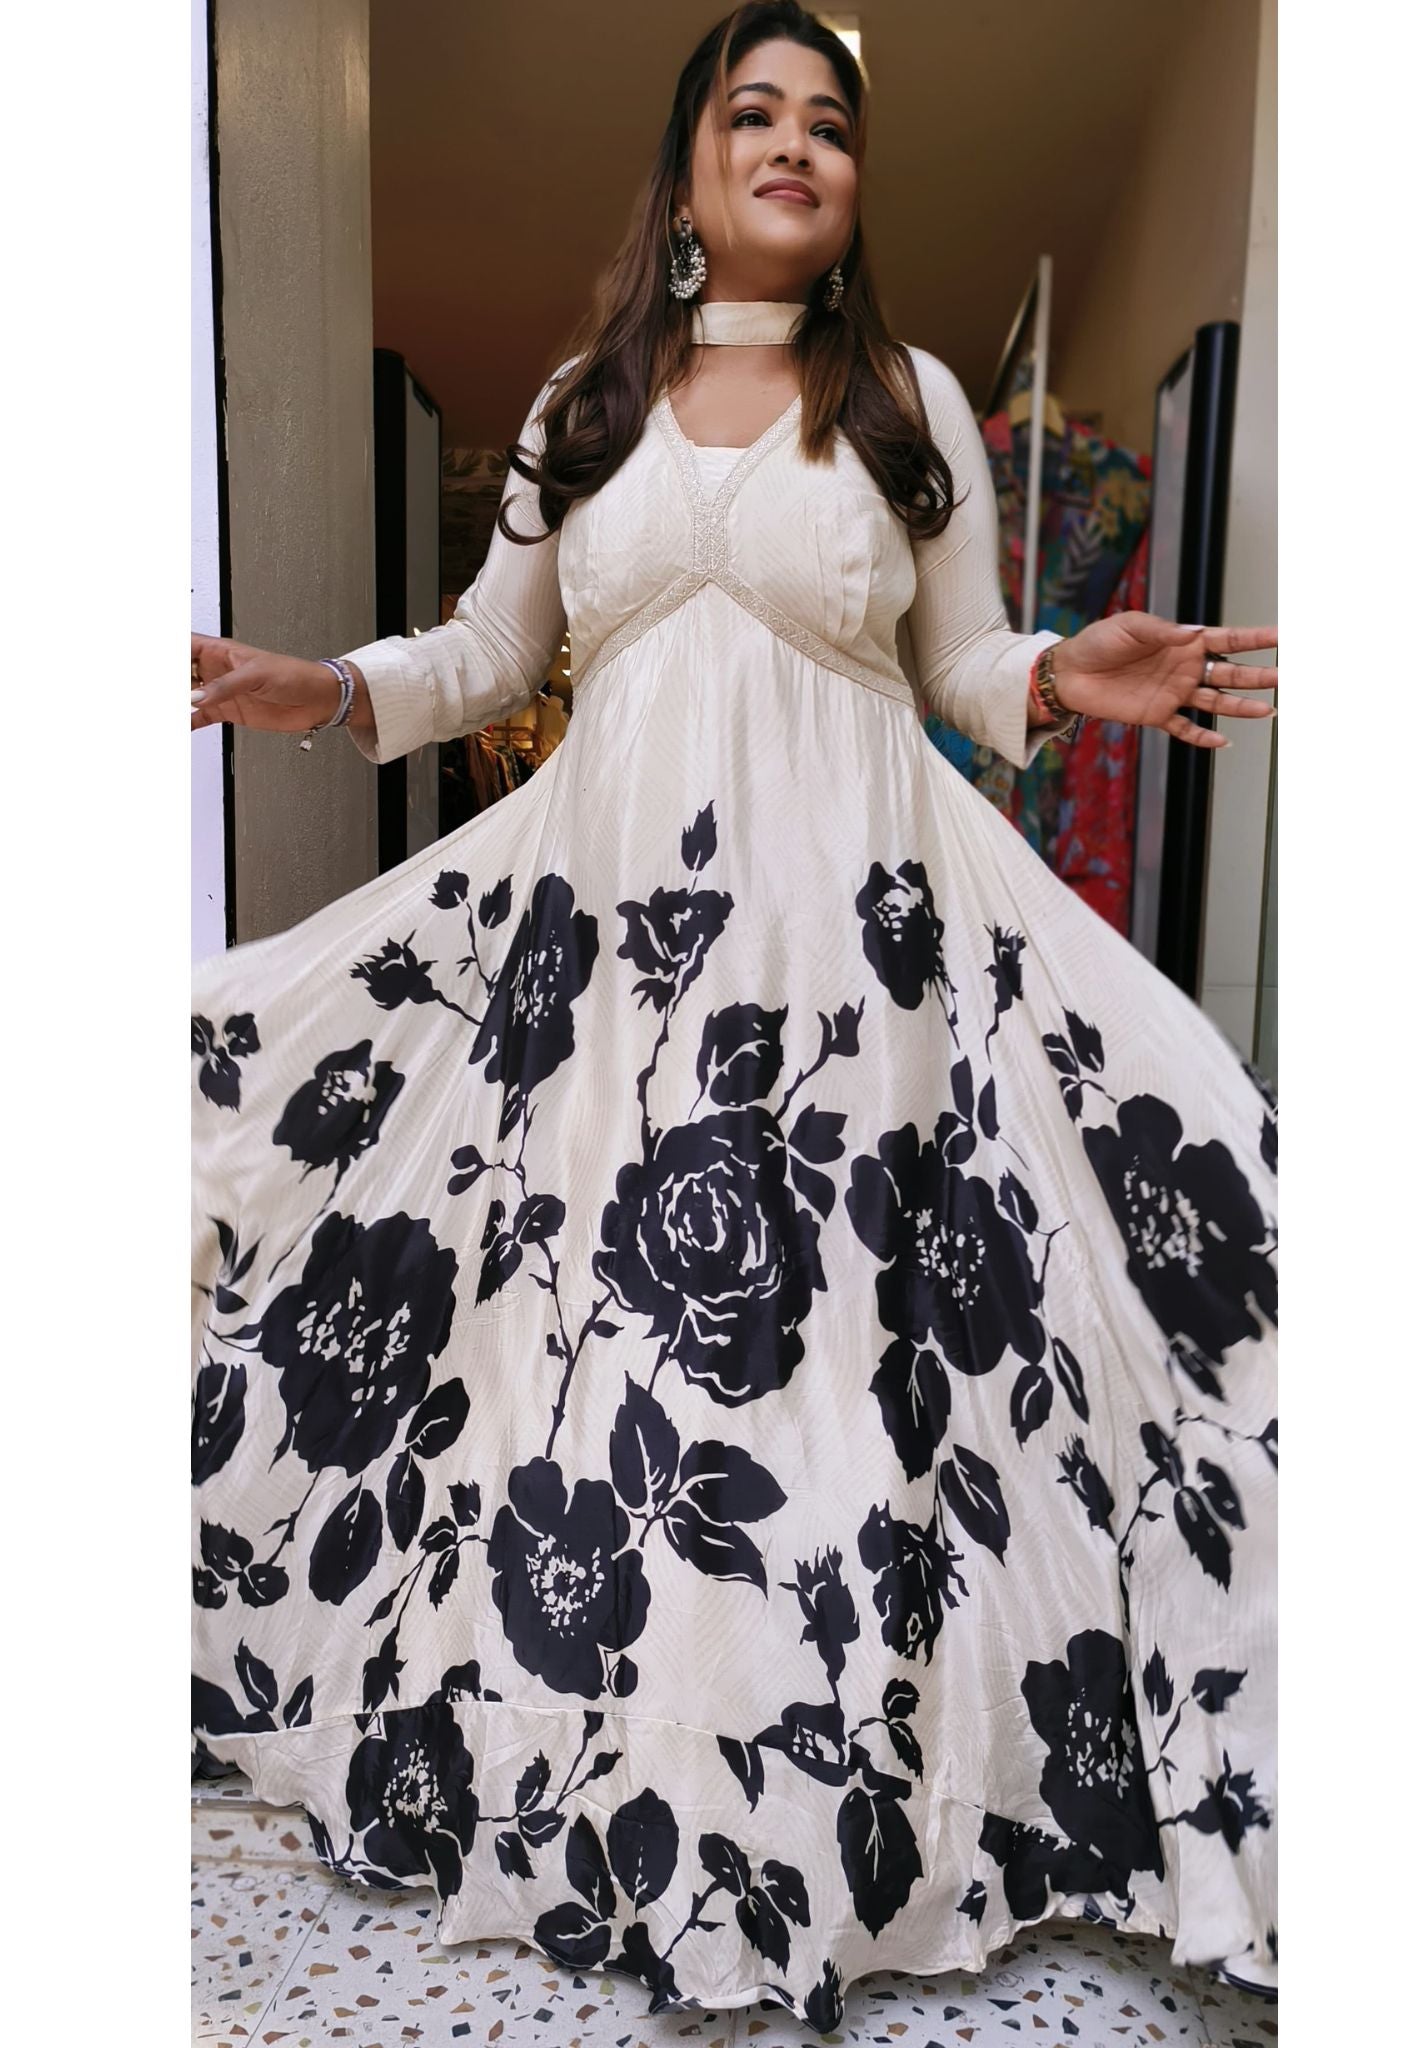 Jaipur Fashion Factory Women's Rayon White Anarkali Style Long Gown Kurta  Set with Dupatta. (Medium, White) : Amazon.in: Fashion